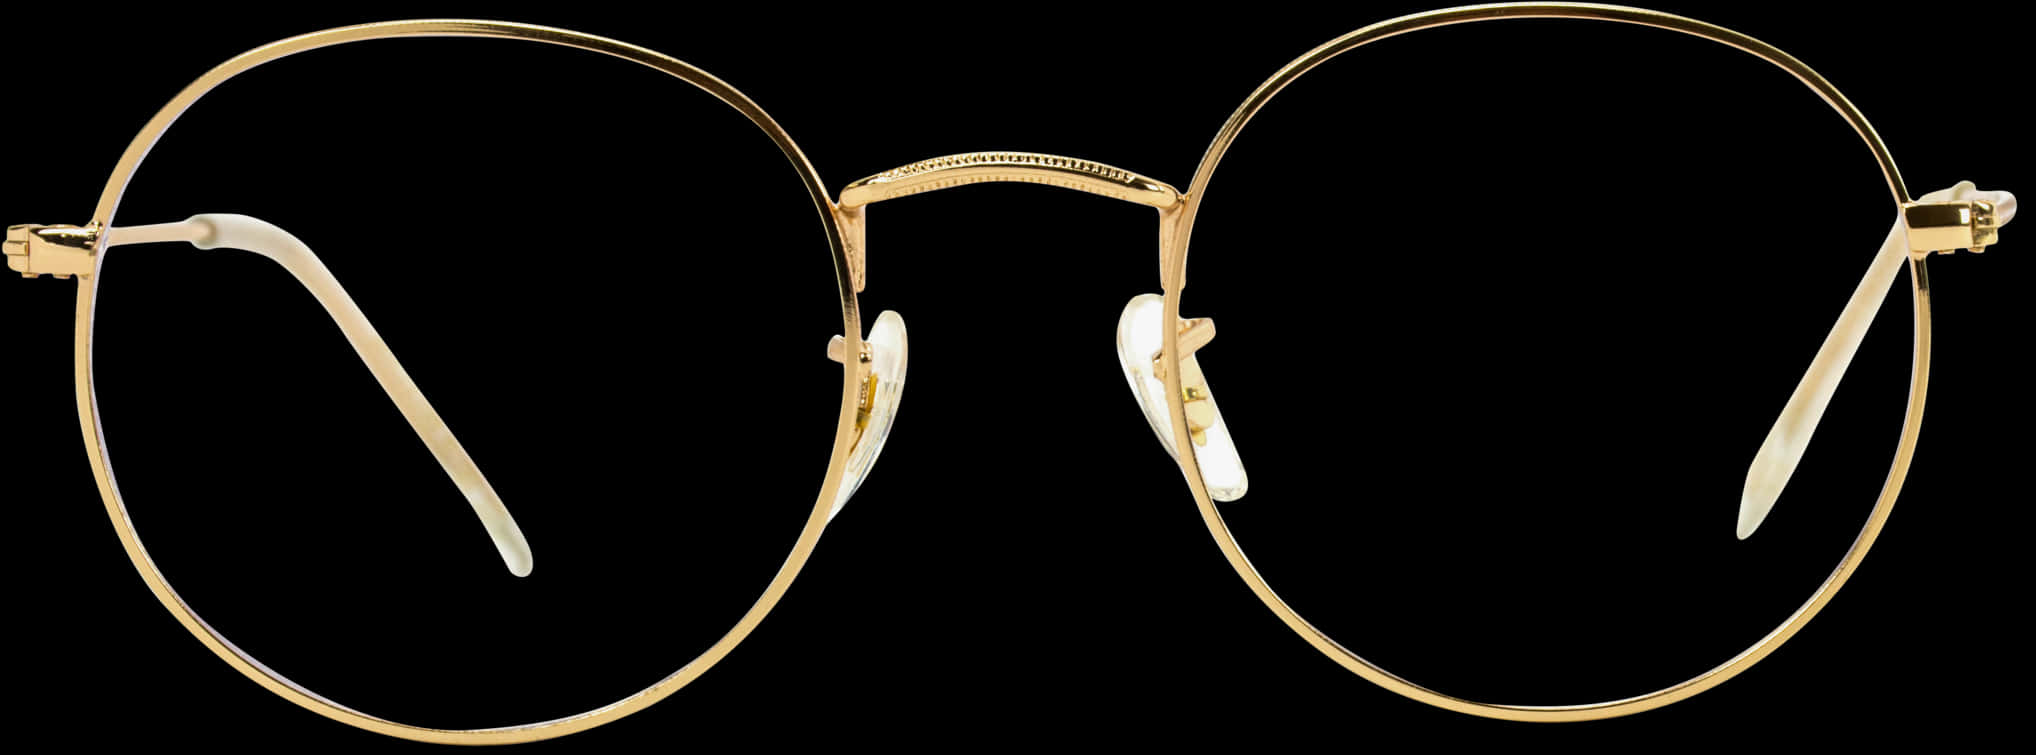 Elegant Gold Round Eyeglasses Isolated PNG